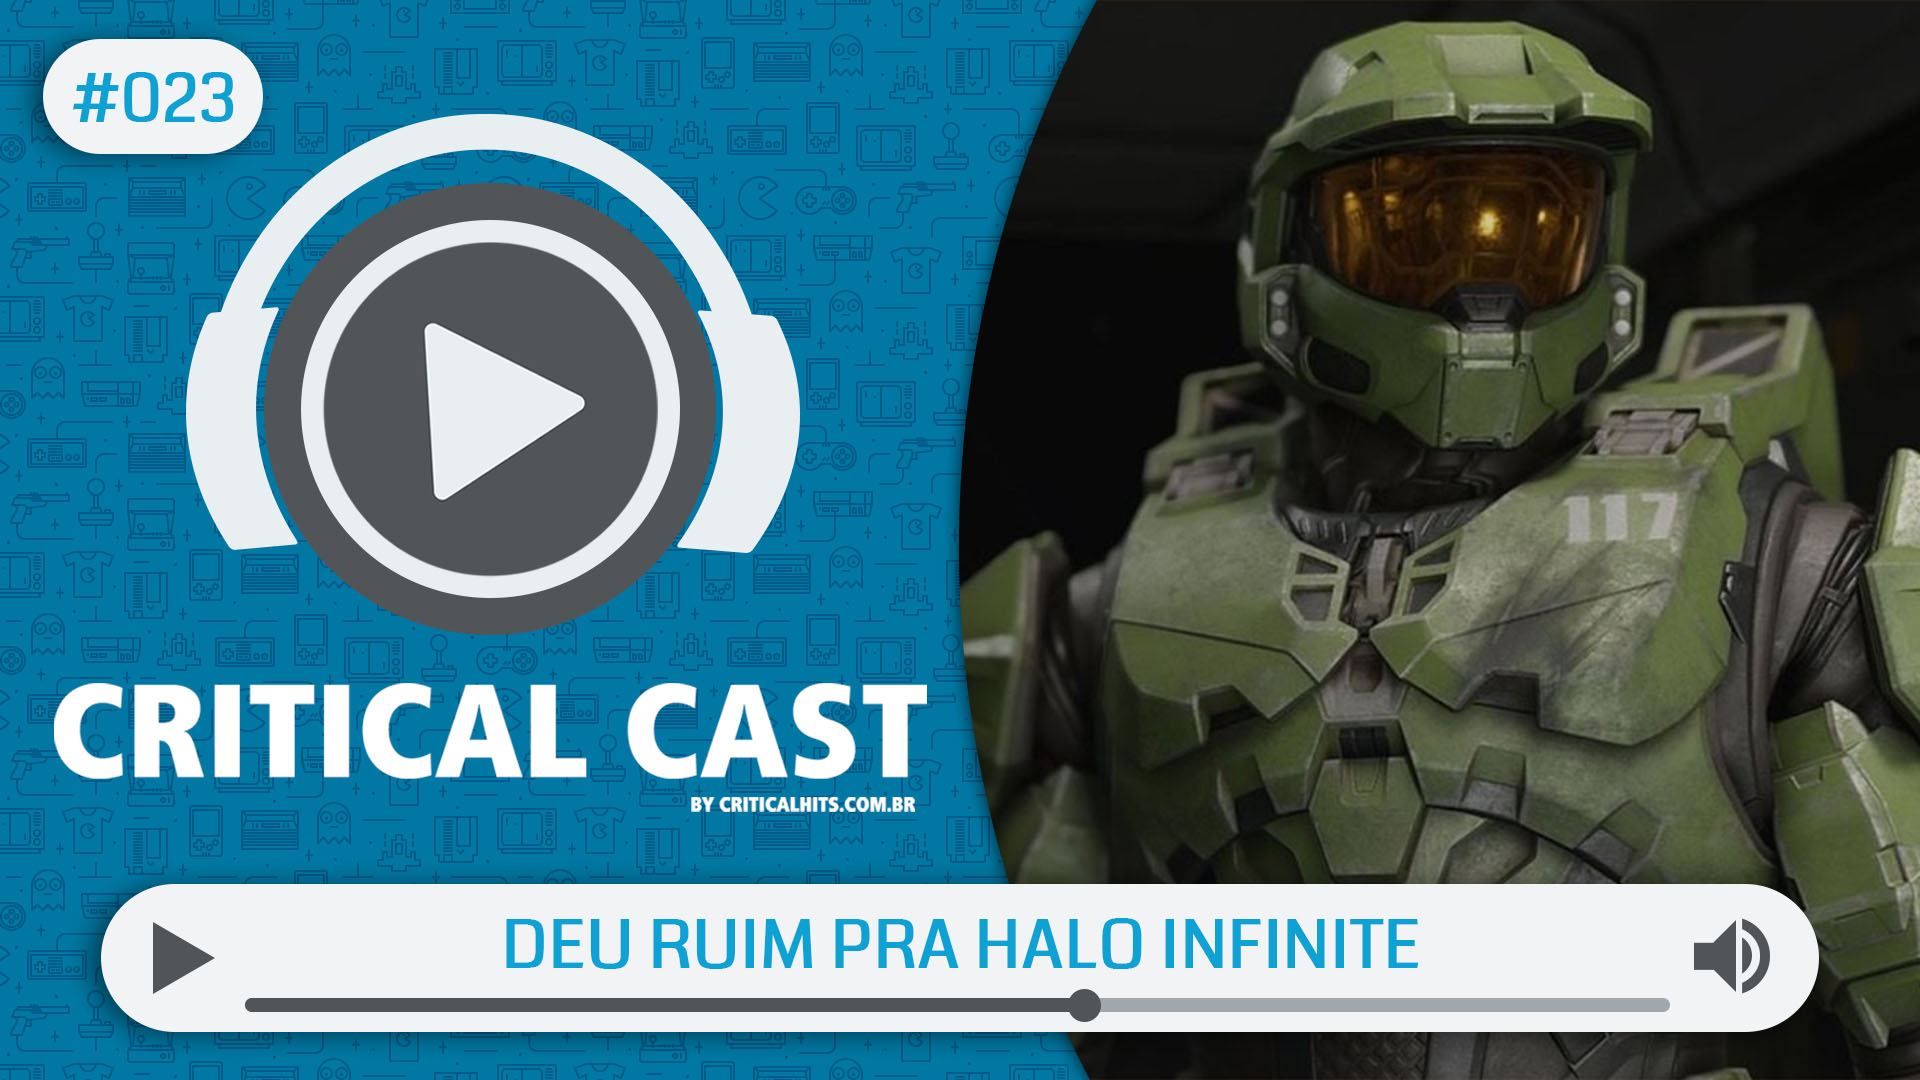 Critical Cast #023 - Deu ruim pro Halo Infinite, o Xbox Series X deveria ser adiado?